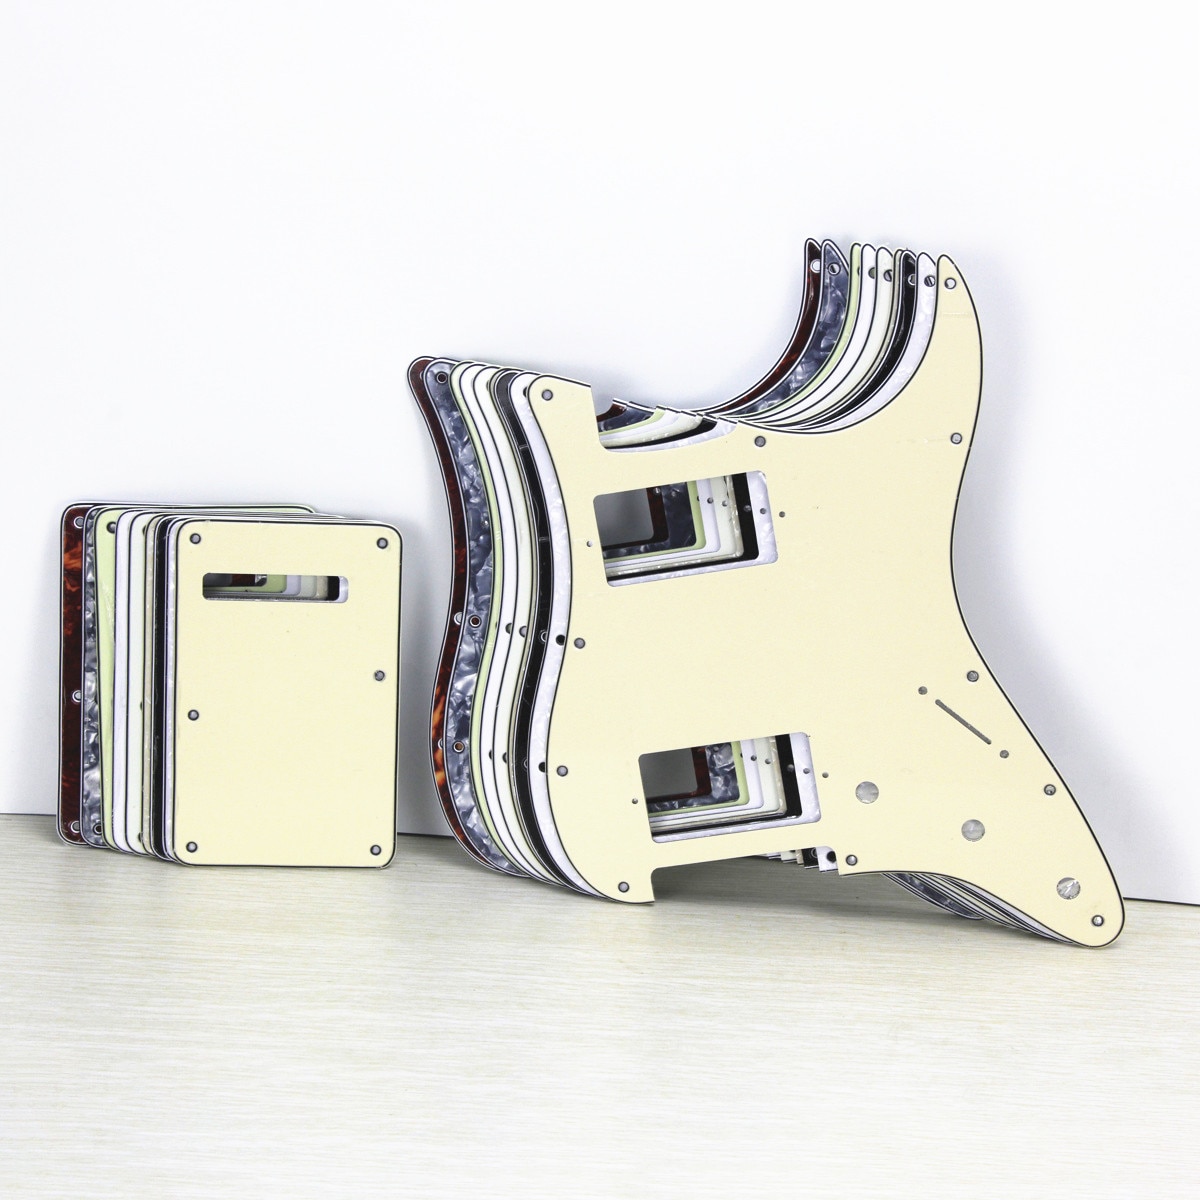 FLEOR Set van 11 Gat HH Elektrische Gitaar Slagplaat Scratch Plaat & Back Plaat & Schroeven voor USA Strat Stijl gitaar Onderdelen